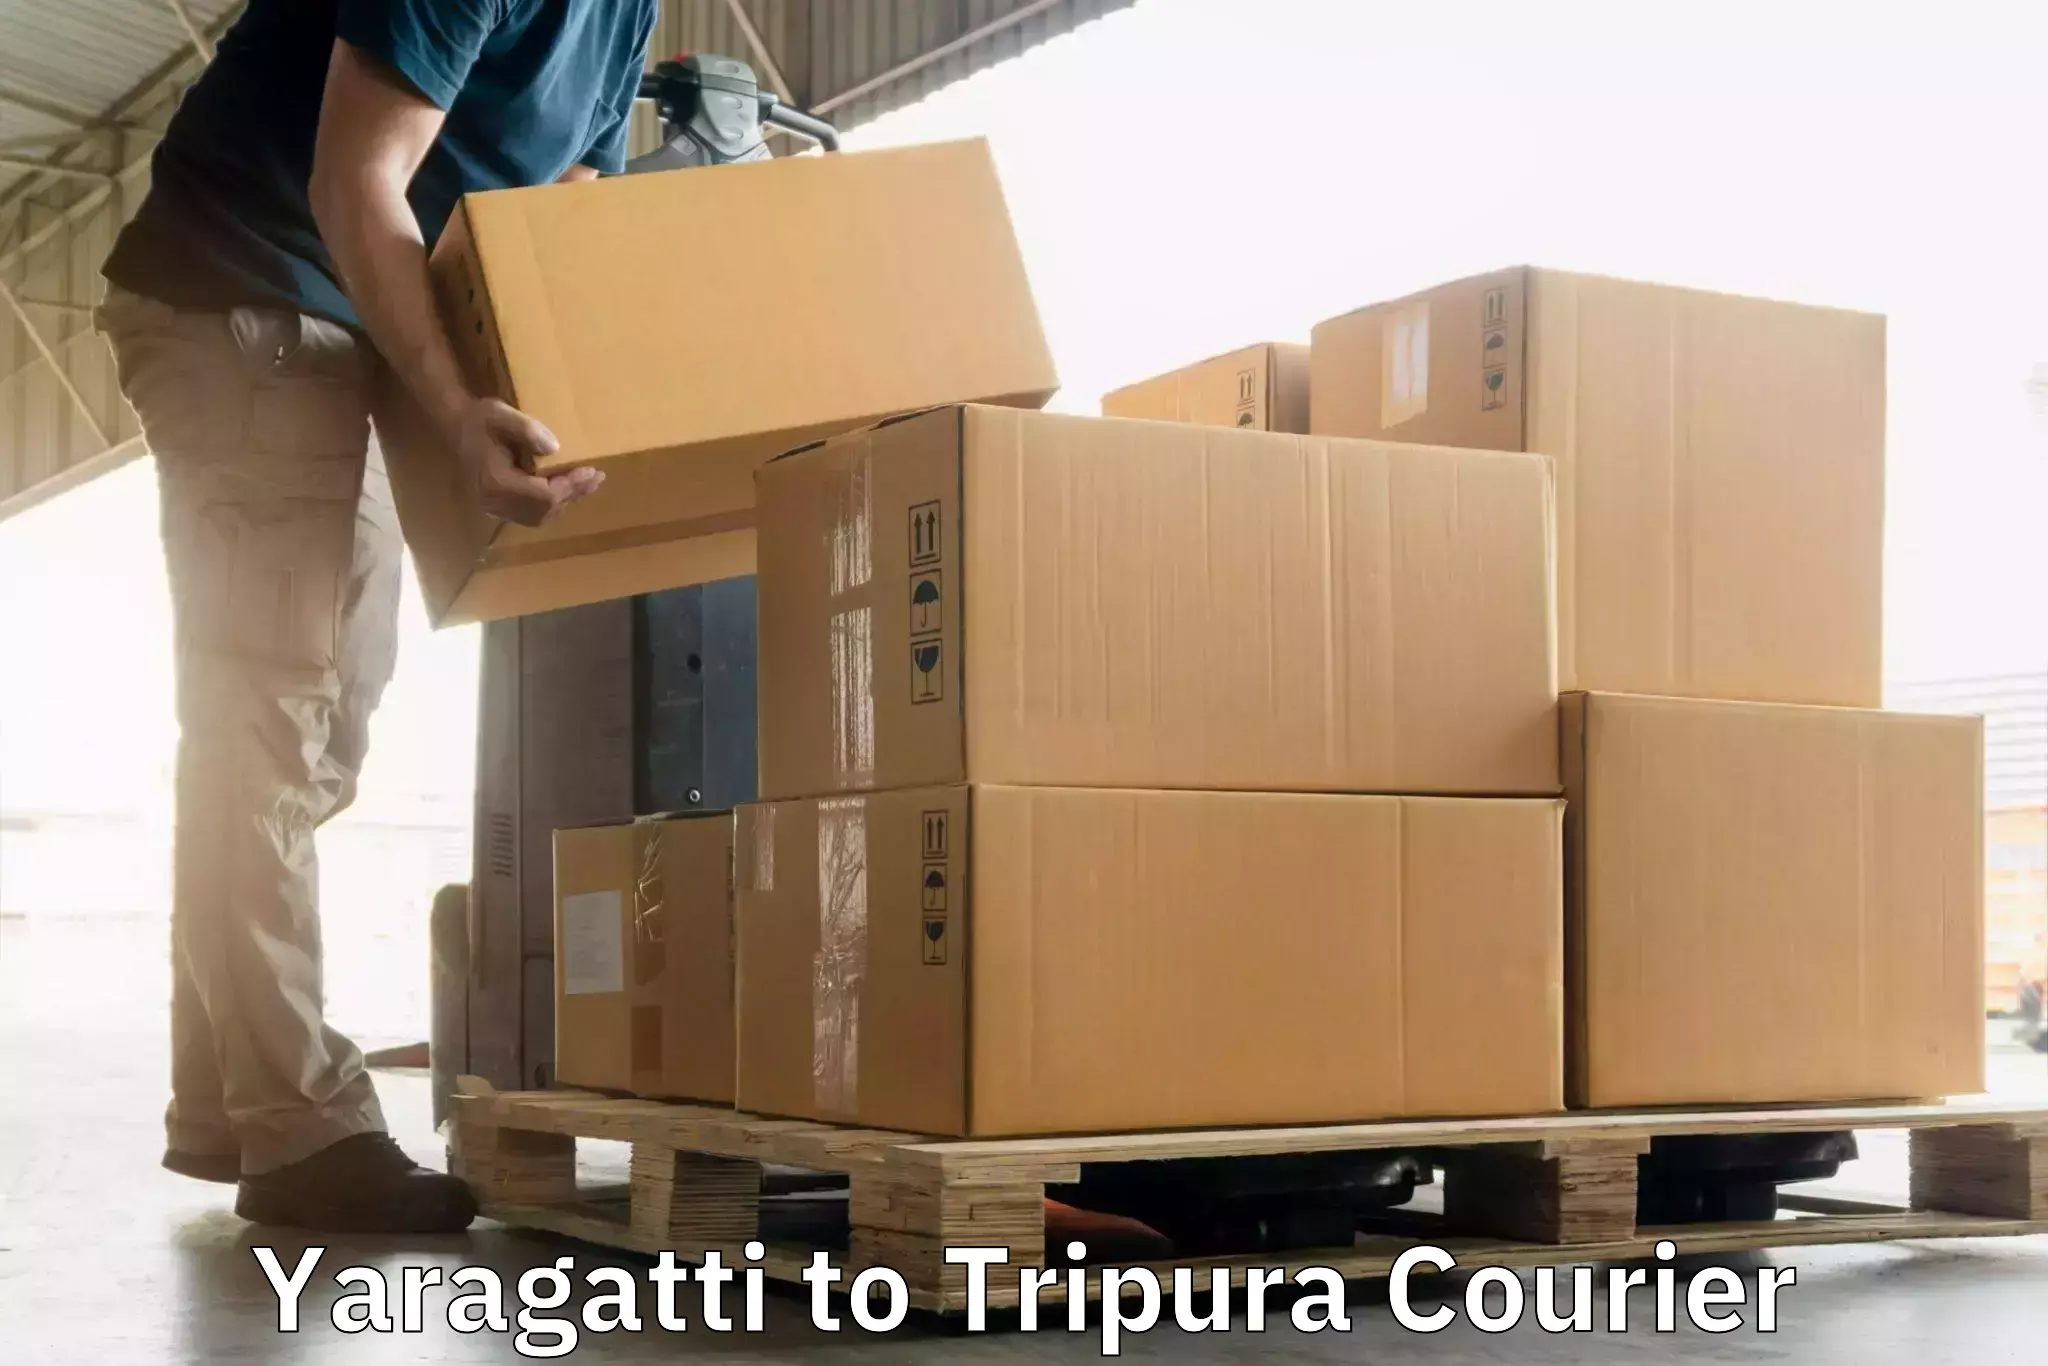 Fast parcel dispatch Yaragatti to Udaipur Tripura